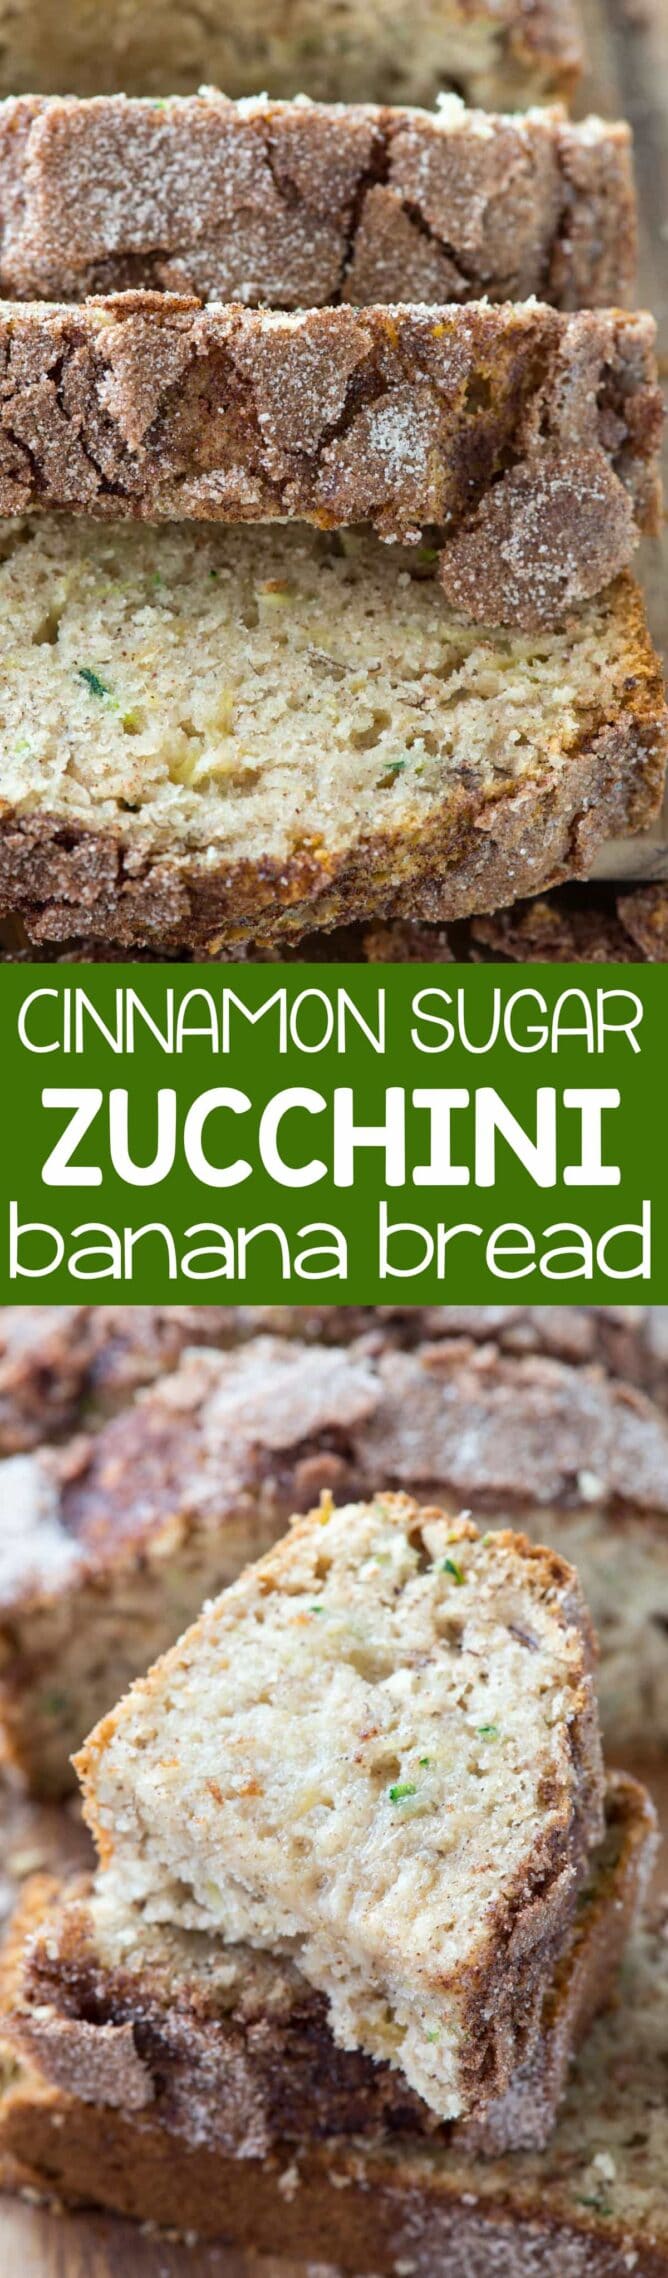 Collage of Cinnamon Sugar Zucchini Banana Bread